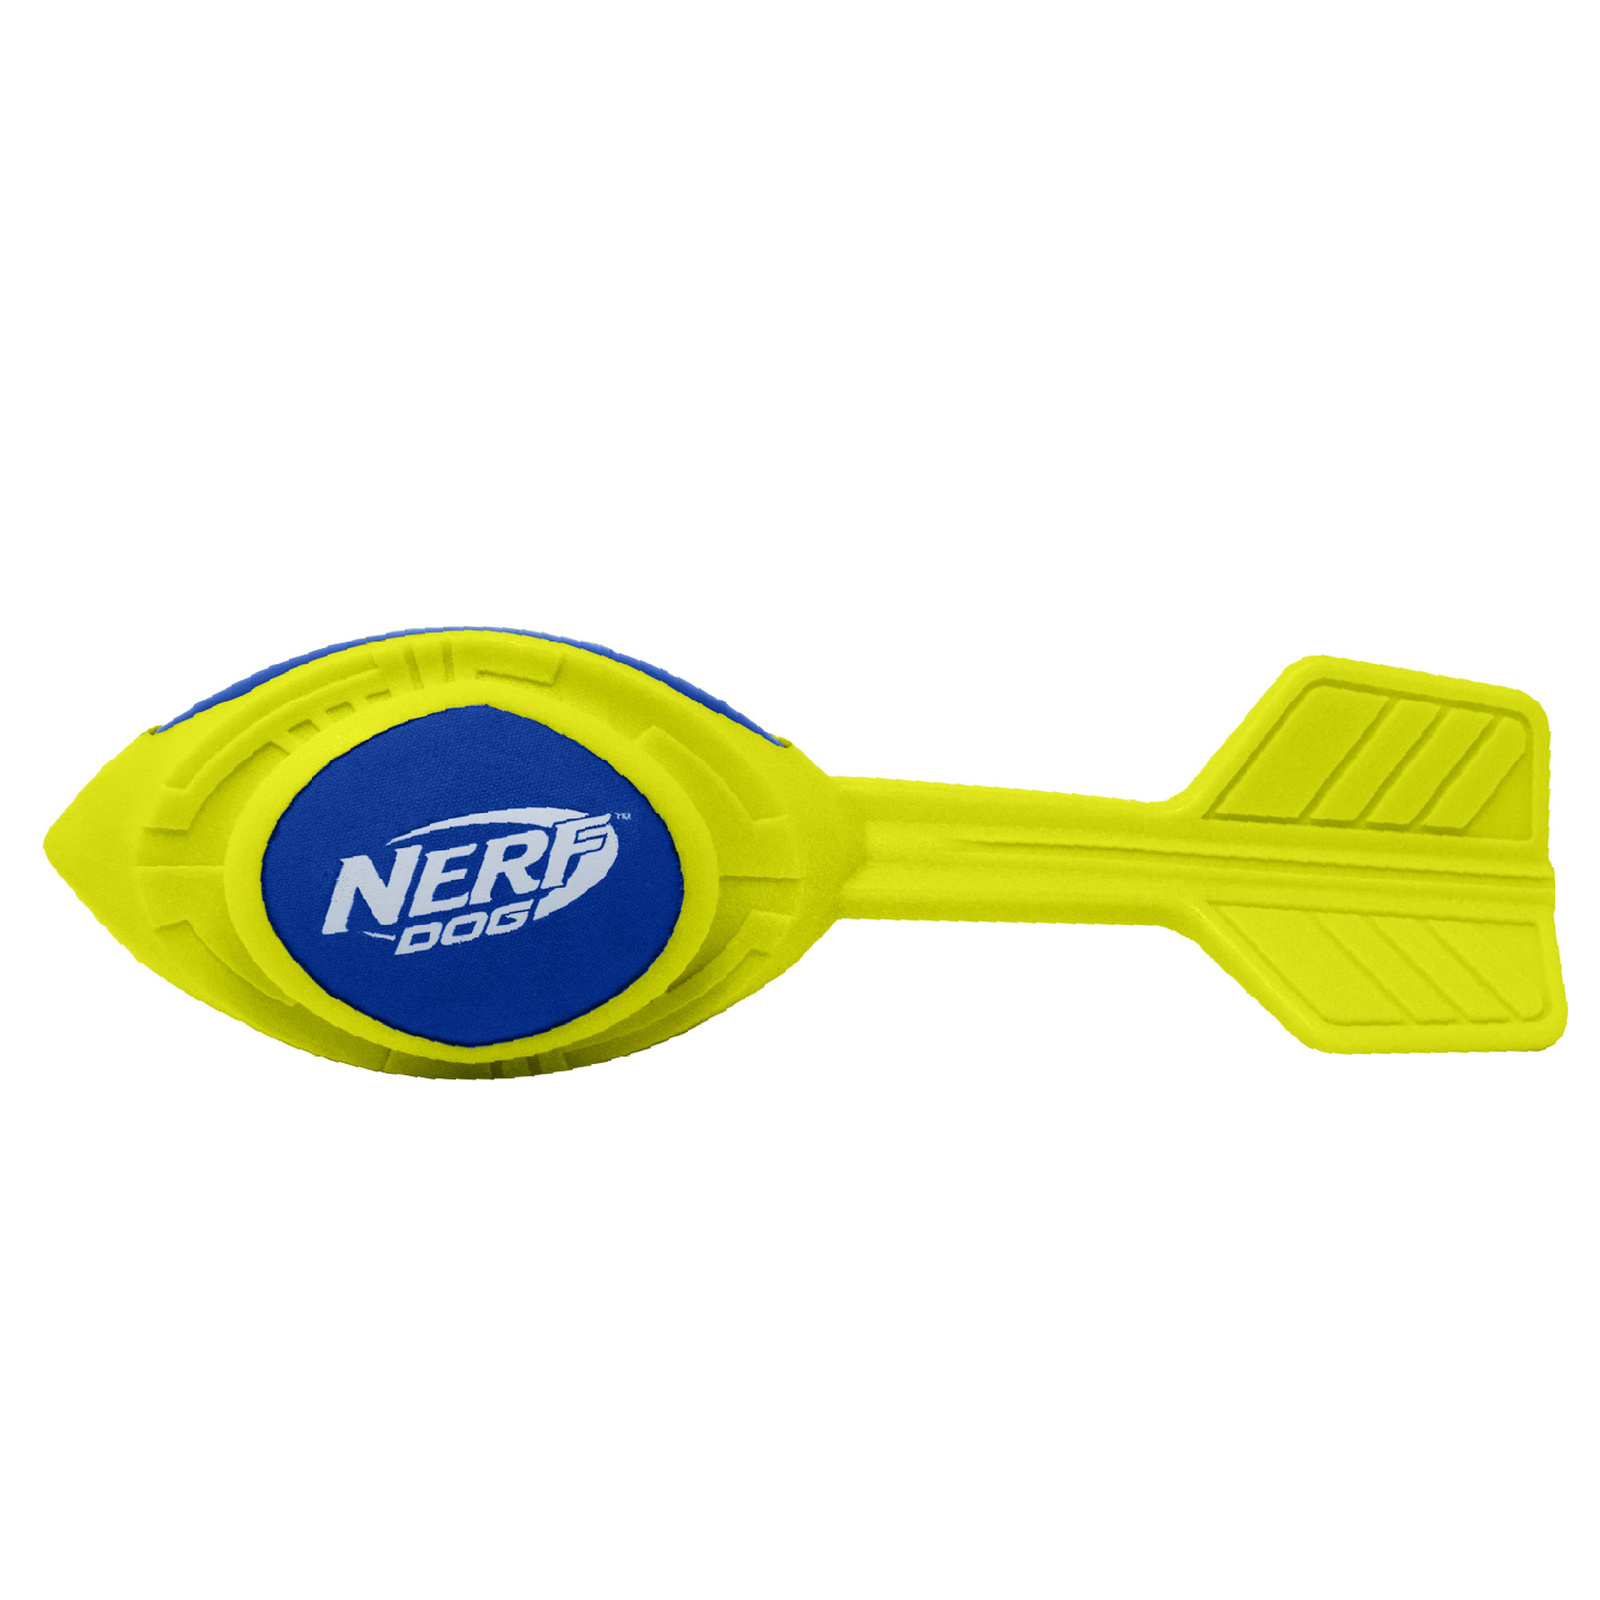 Nerf Nerf игрушка из вспененной резины 30 см (серия Мегатон) (290 г) nerf мяч для регби из термопластичной резины 18 см серия мегатон синийоранжевый 53957 0 254 кг 57276 1 шт